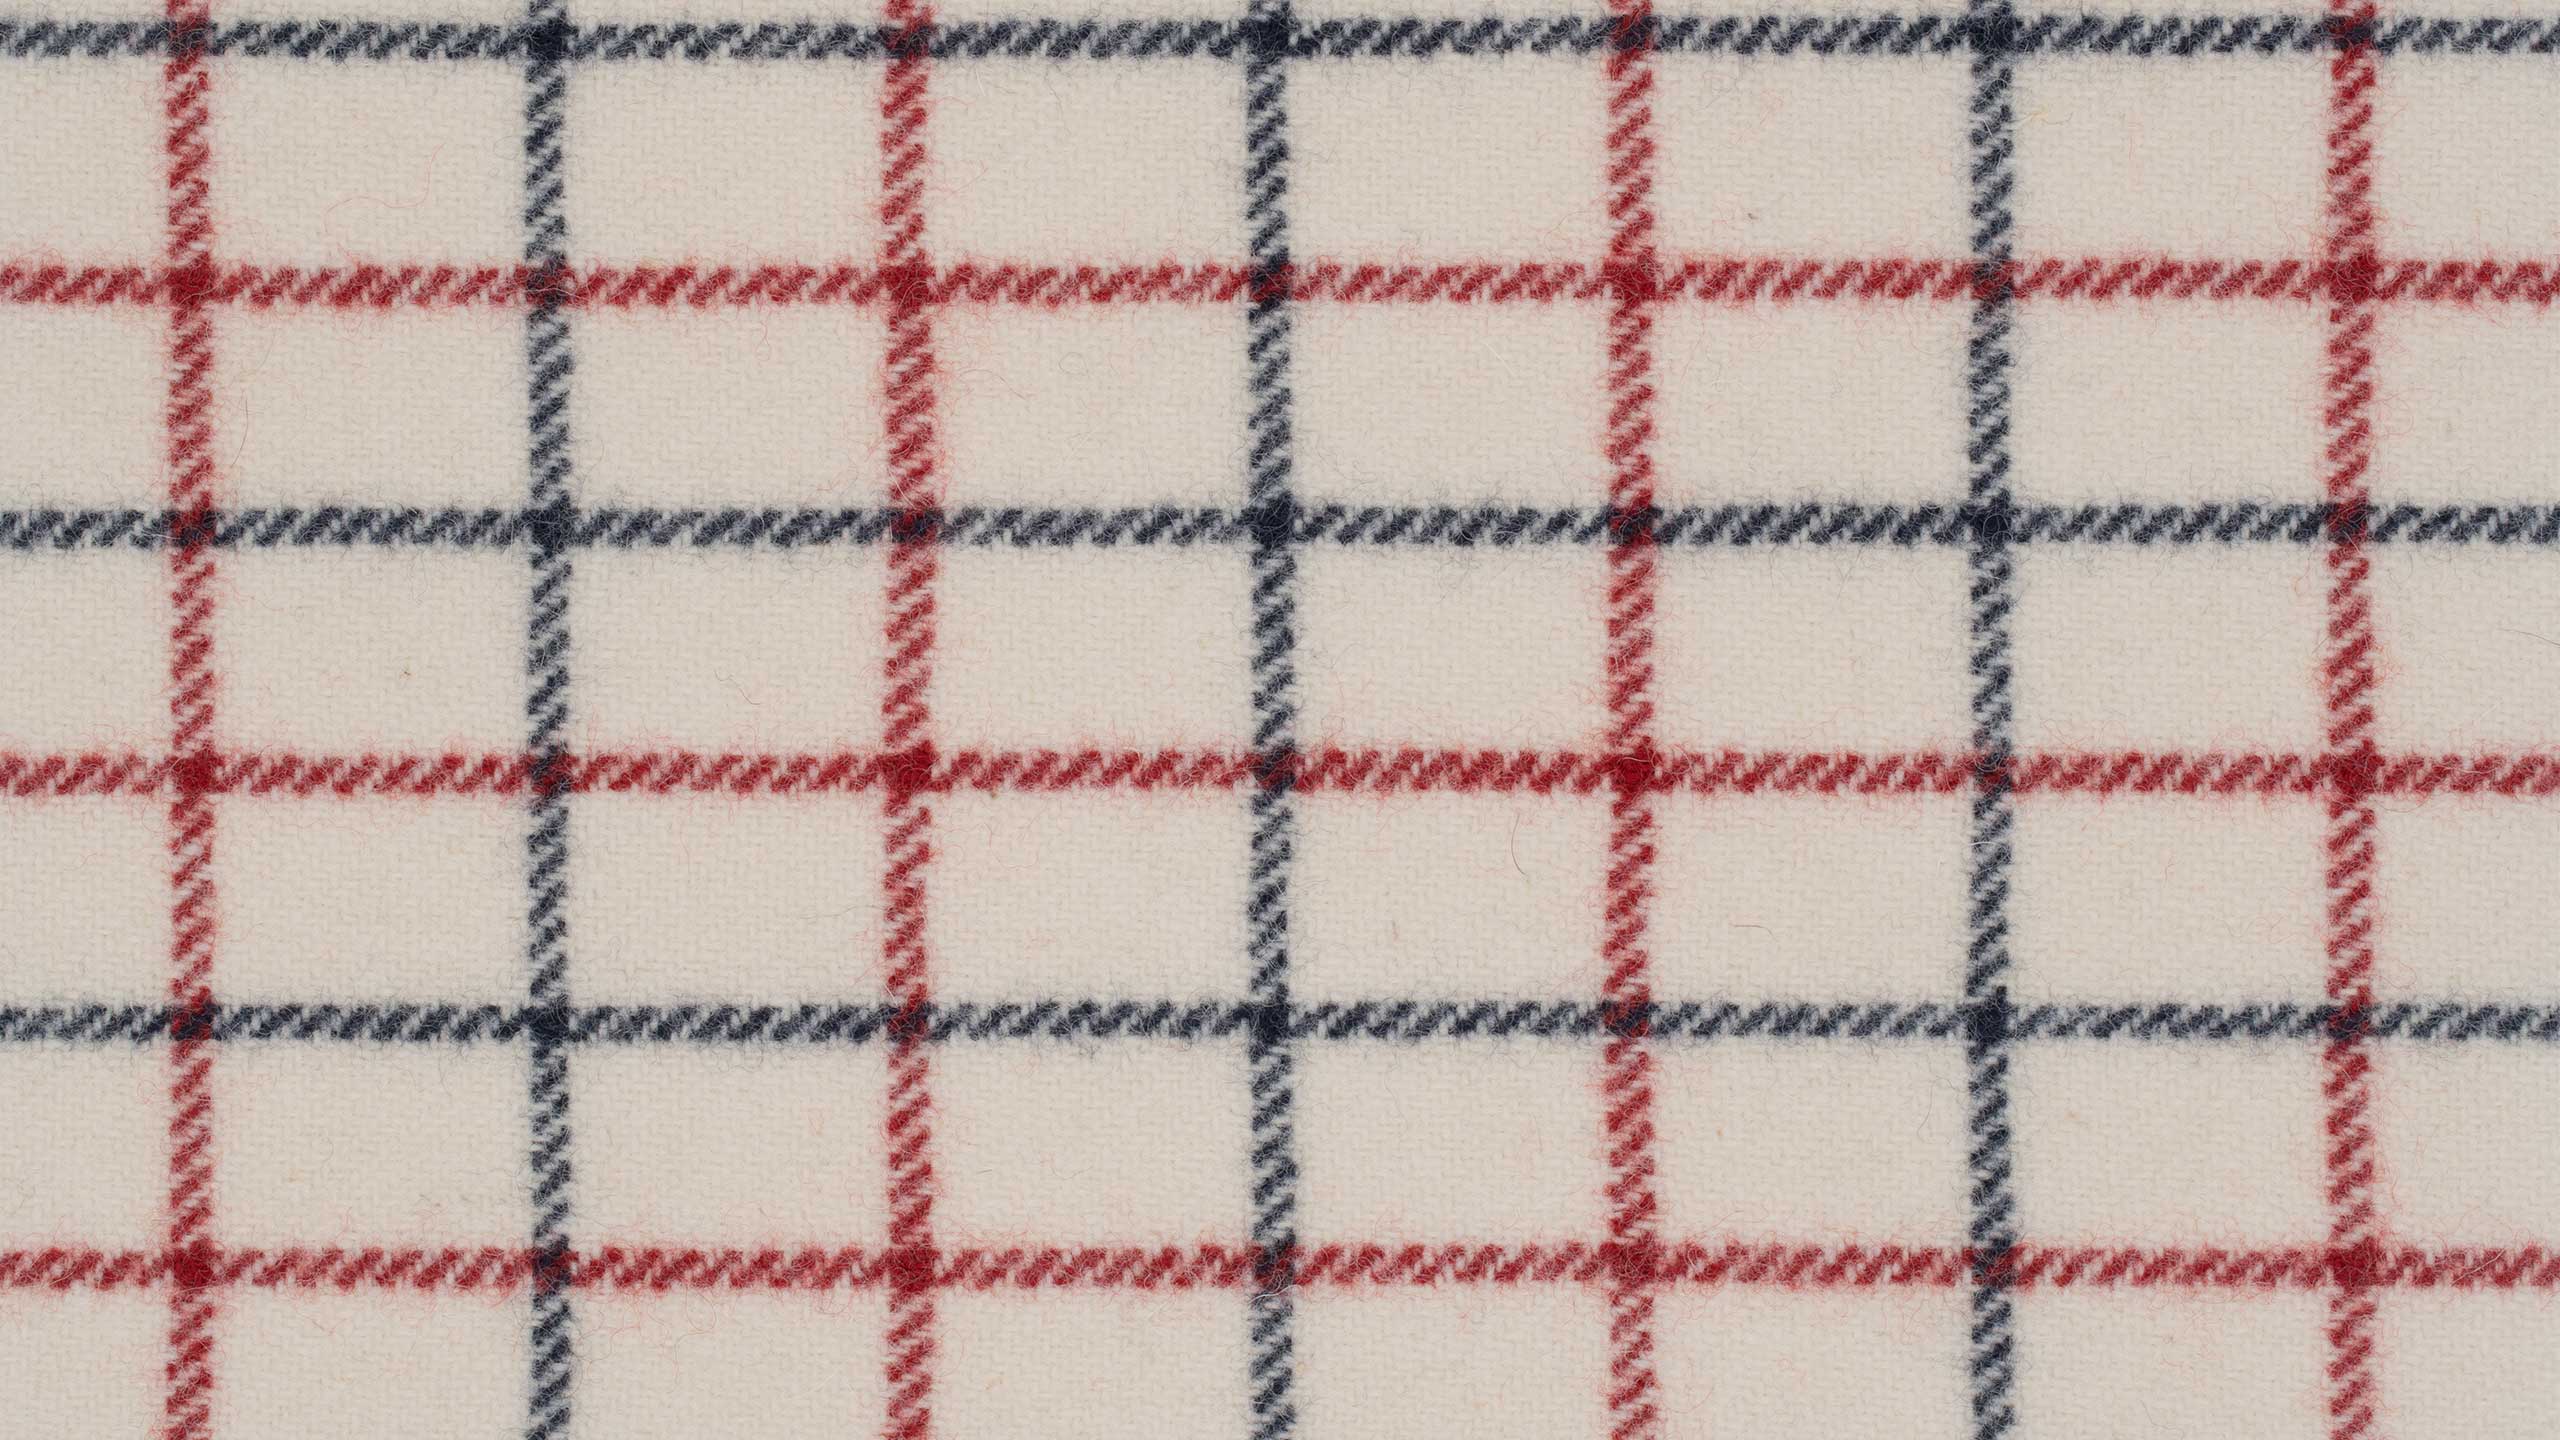 Kjellerup Væveri, Dänemark, arbeitet mit einer Textiltradition, die bis in die 1950er Jahre zurückreicht und ist der einzige Hersteller des ikonischen Hestedækken-Textils, das ursprünglich von der Royal Military Clothing Factory Est. 1791 stammt. Das heutige modern-klassische Farbschema wurde von Textildesigner Kim Naver in den 70er Jahren entworfen.